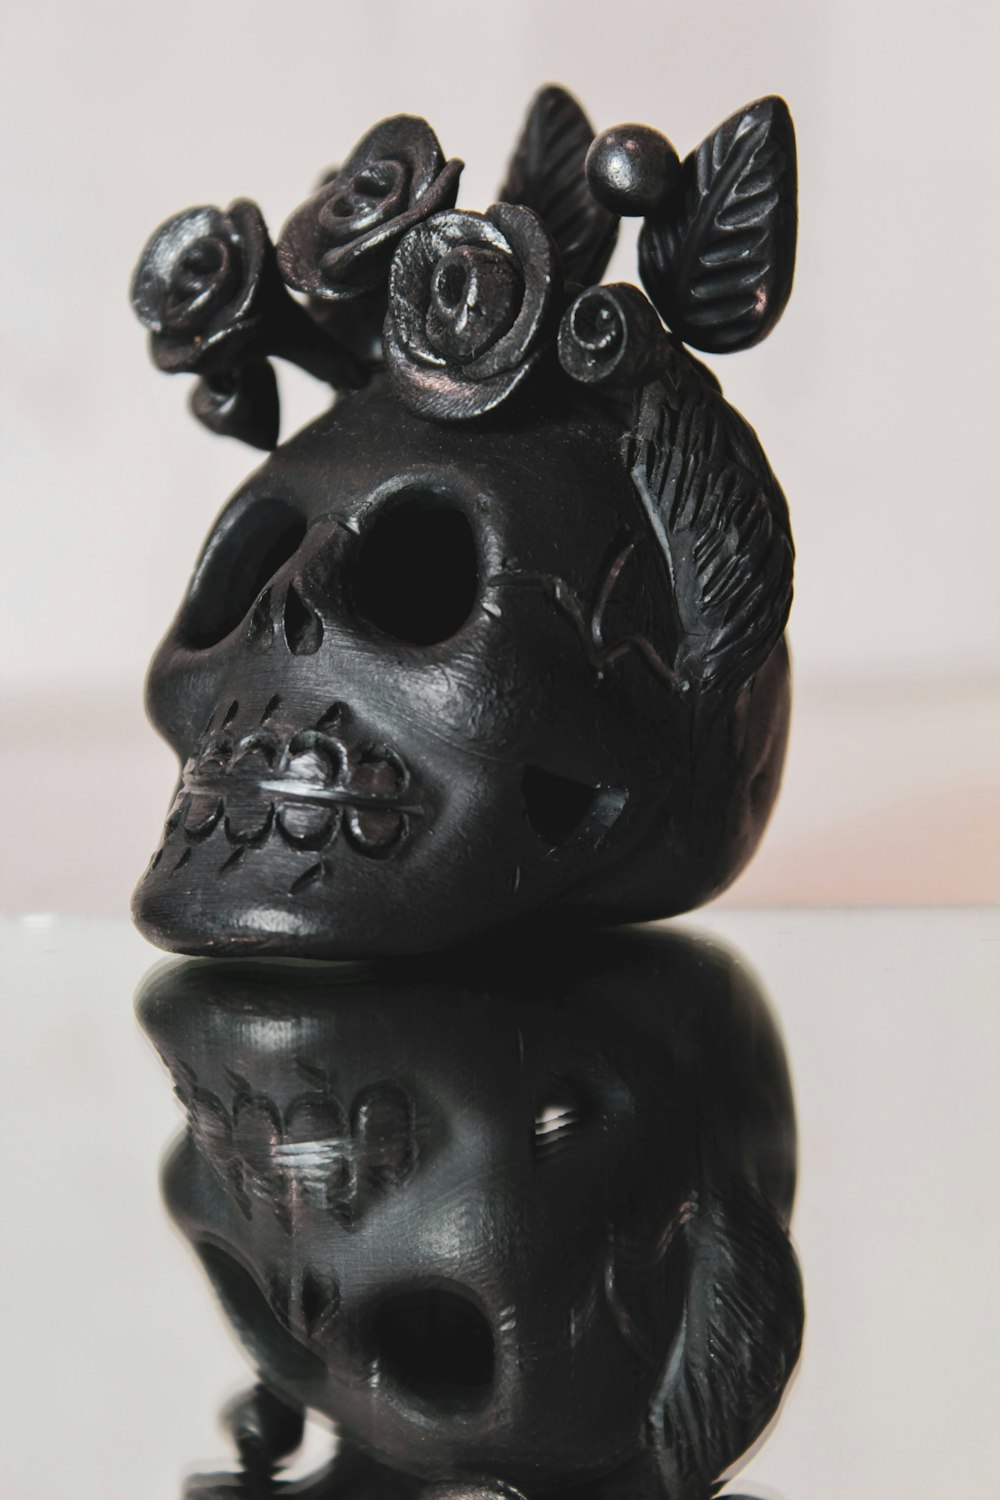 Figurine de crâne en céramique noire sur table blanche